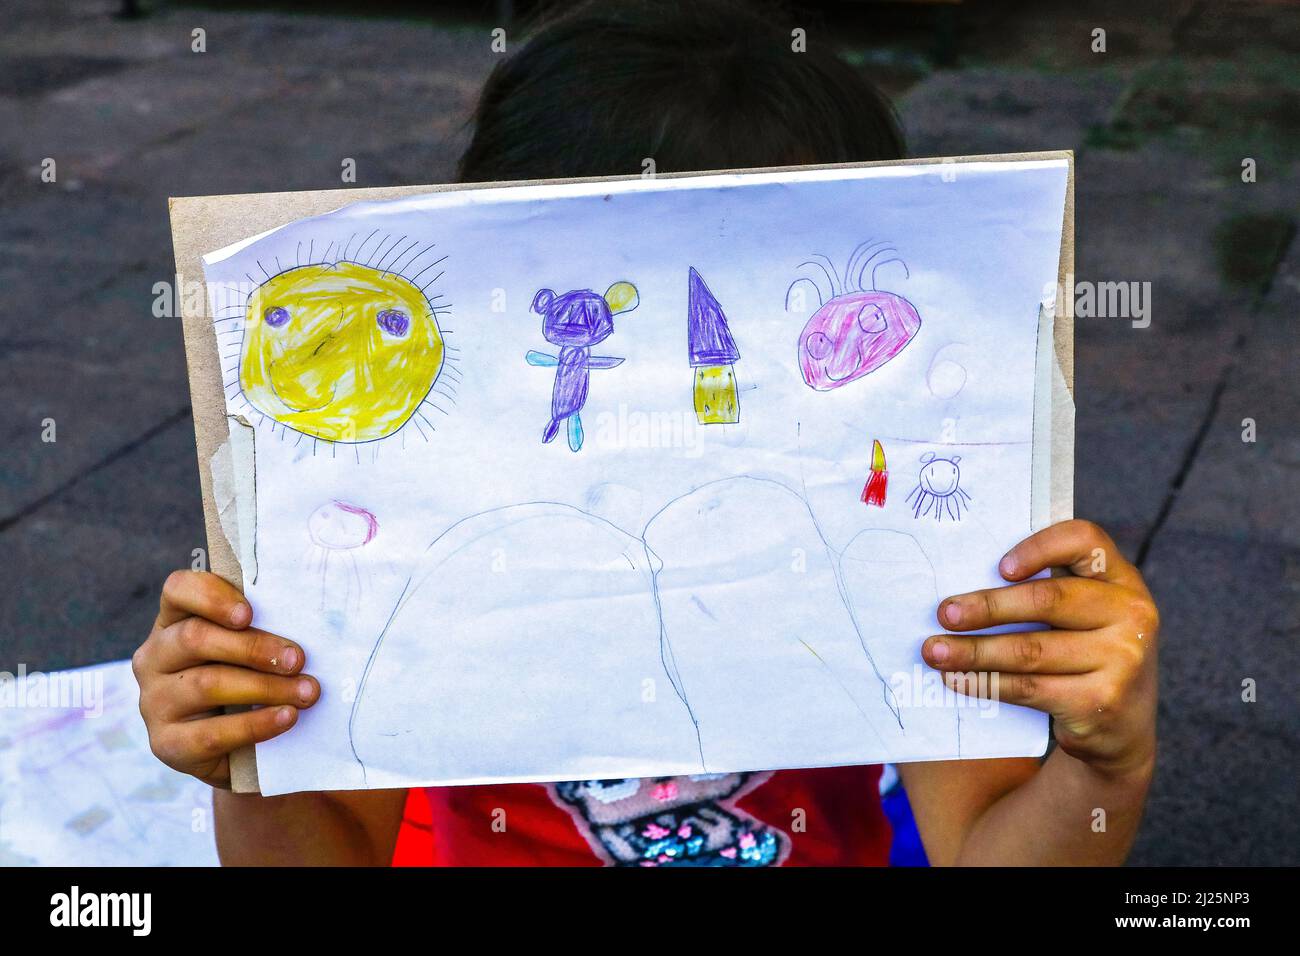 Enfant montrant son dessin à Riobamba, Equateur Banque D'Images